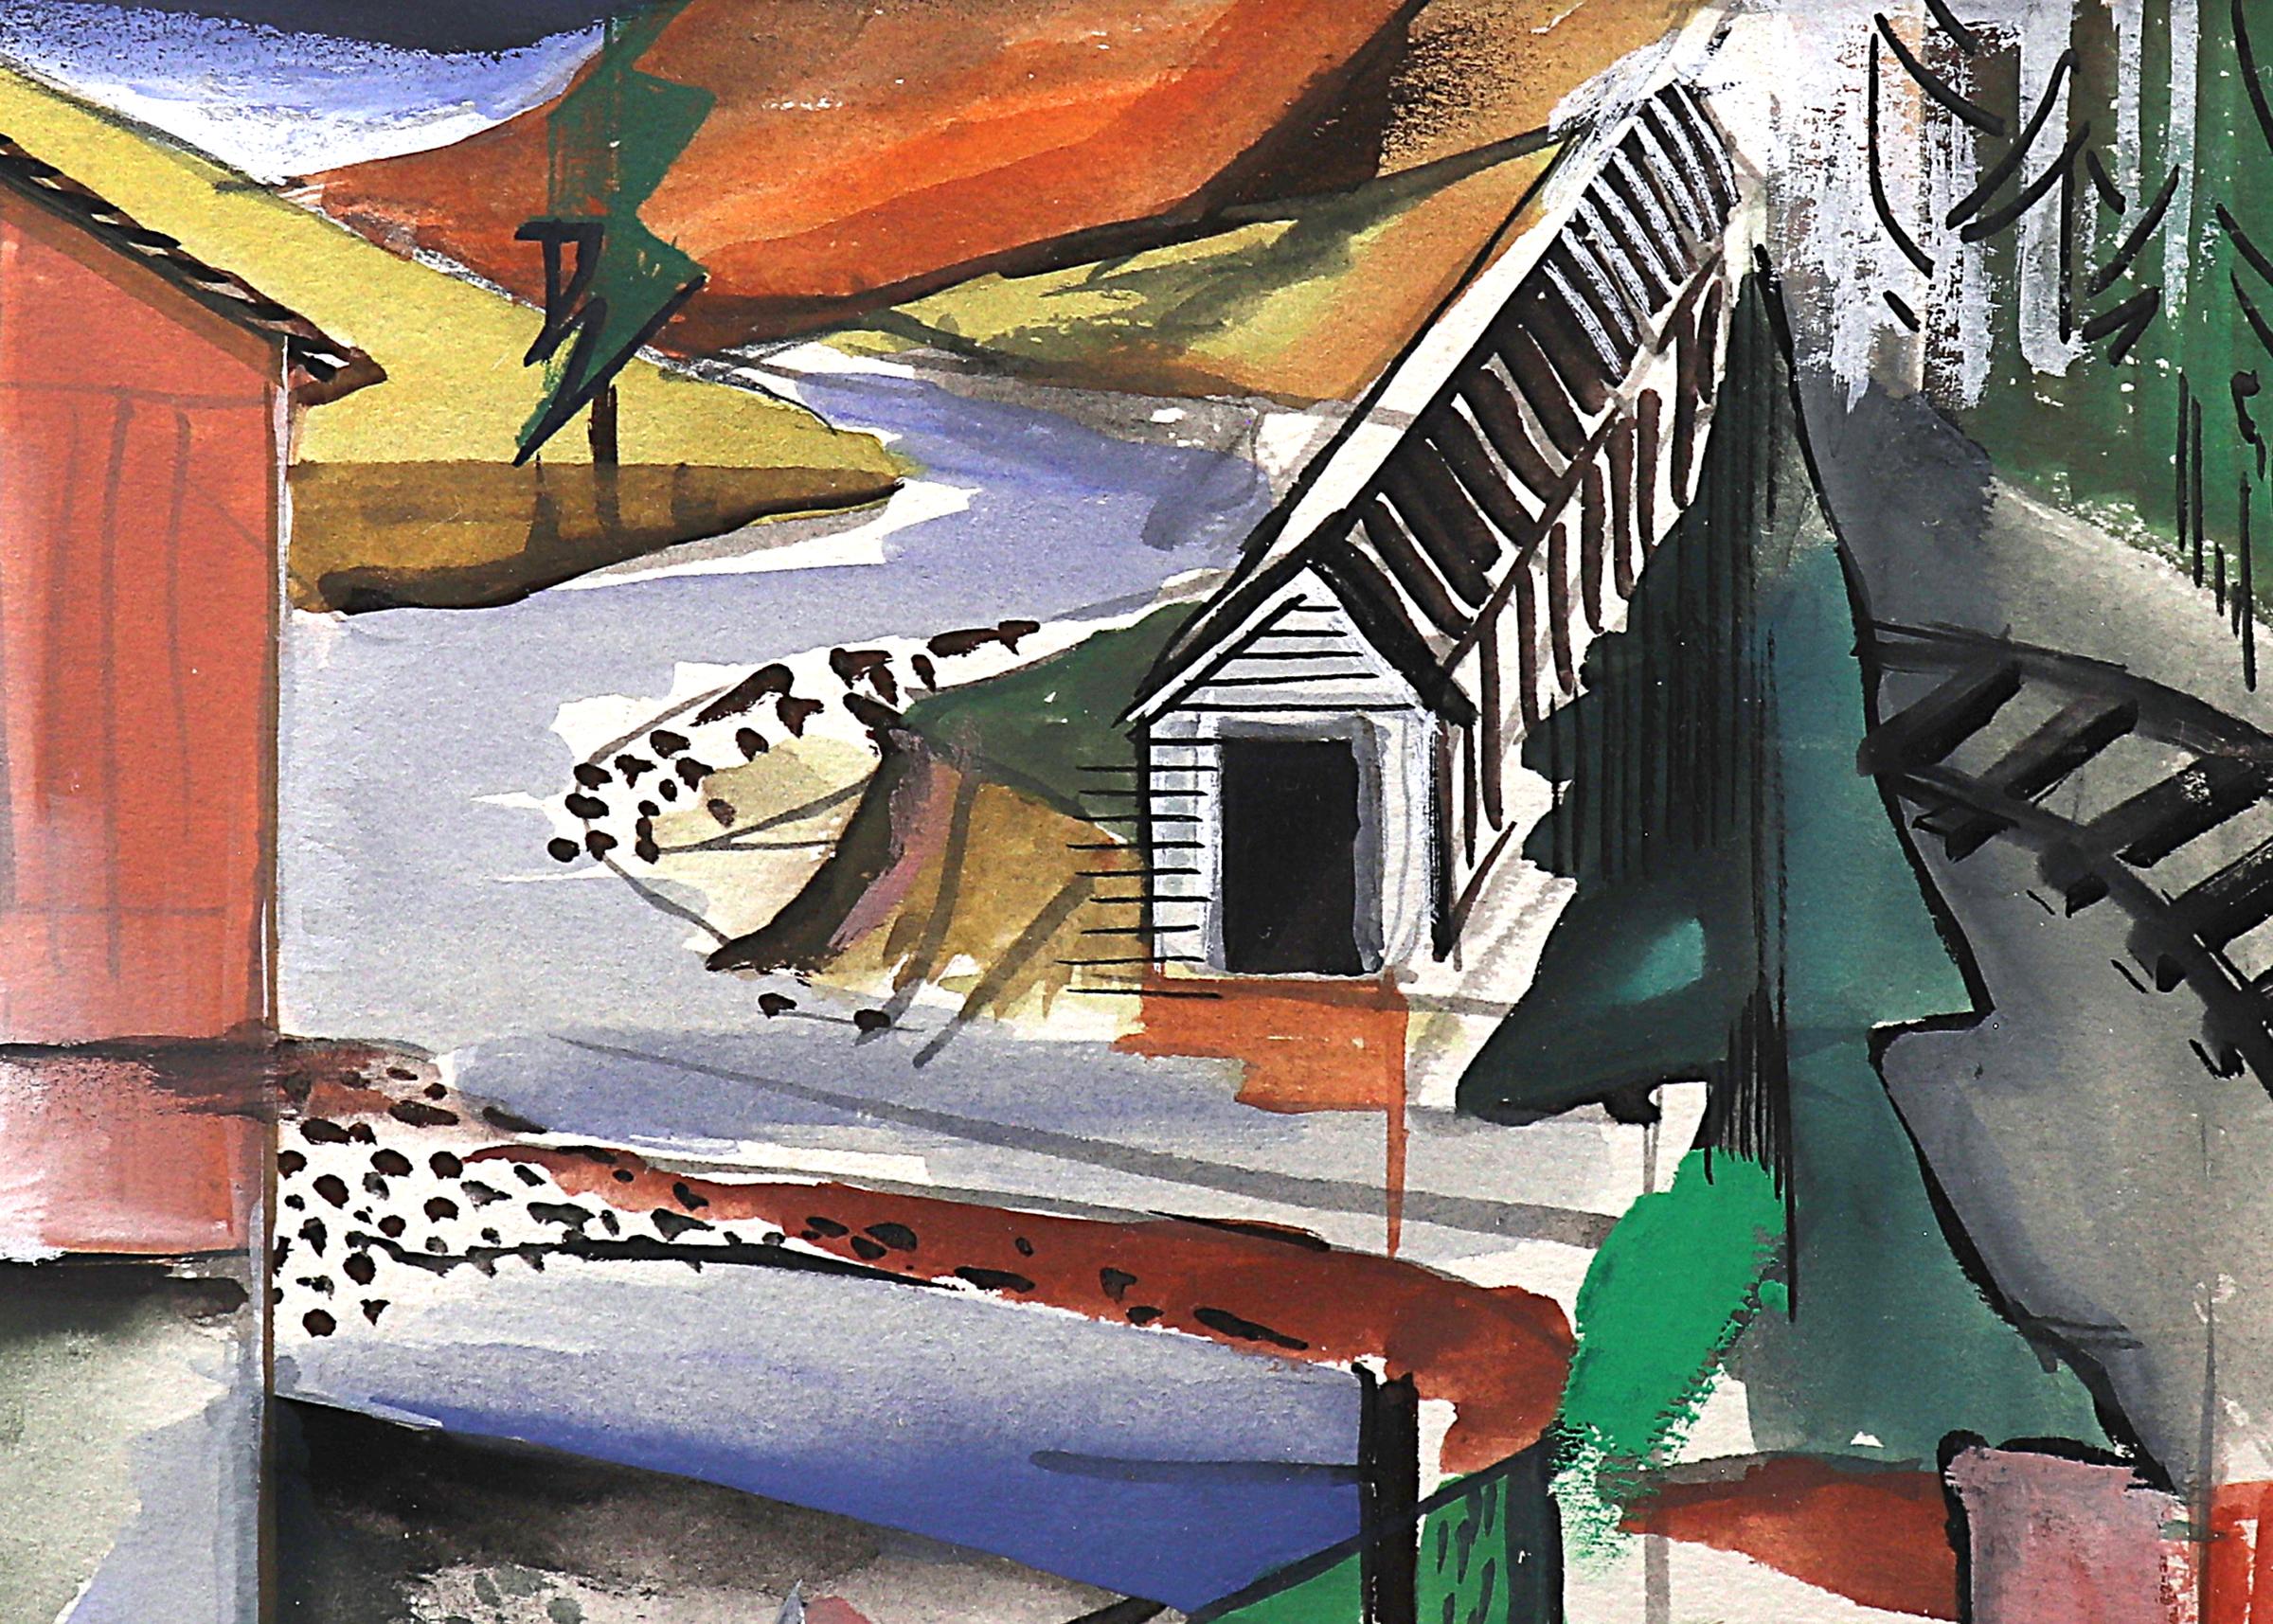 Gemälde in Gouache und Aquarell auf Papier, gemalt 1948 von Mary Chenoweth (1918-1999). Signiert und datiert vom Künstler in der rechten unteren Ecke. Zeigt eine abstrahierte Landschaft des Goldabbaus in der Homestake Mine in South Dakota. Bemalt in